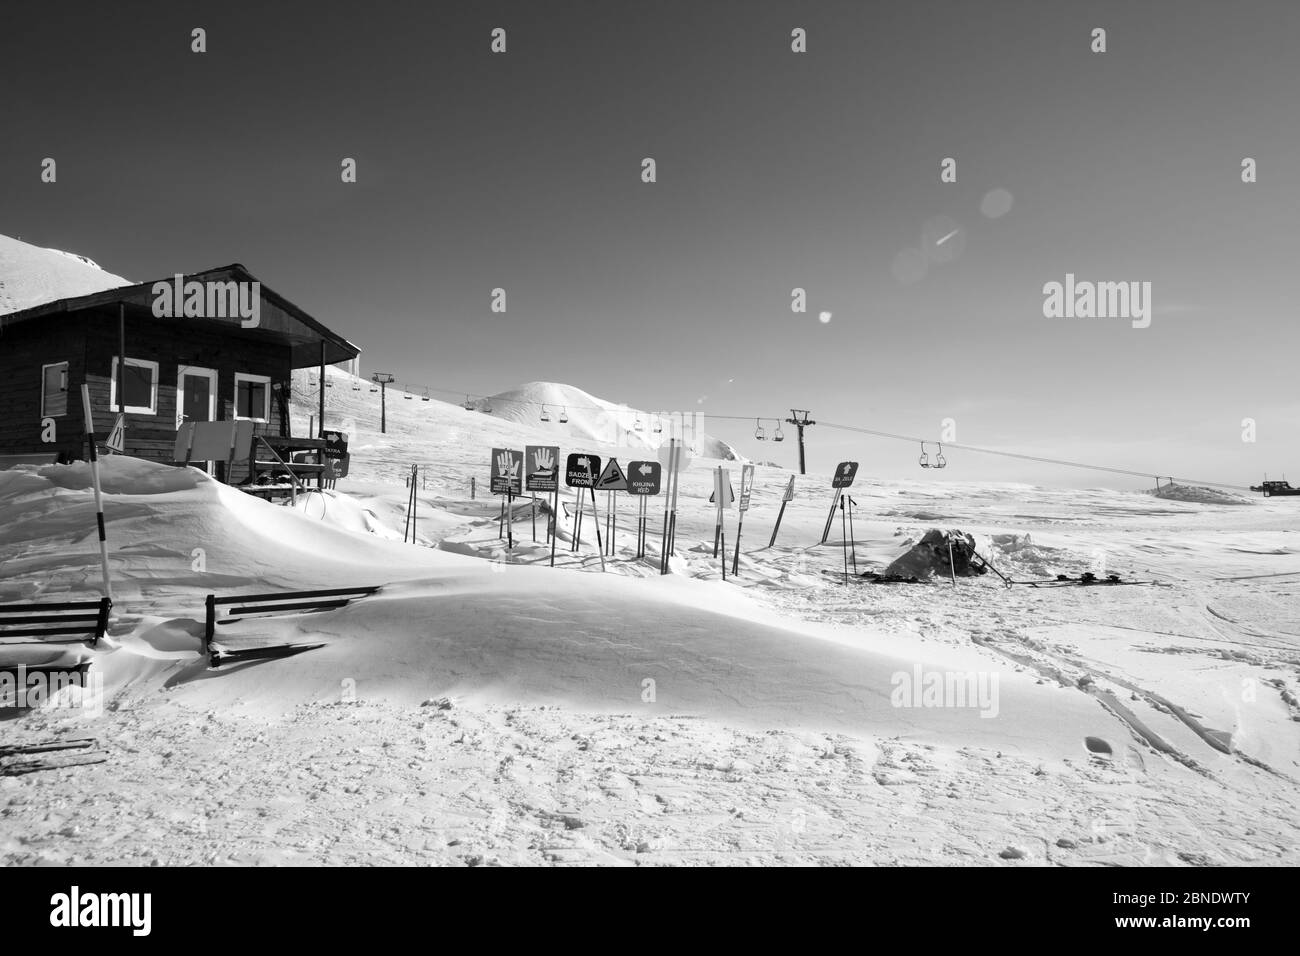 Montagne innevate bianche e nere, casa di salvataggio in legno, cartelli di allarme in motoslitta, seggiovia e cielo limpido con fascio solare. Montagne del Caucaso al sole Foto Stock